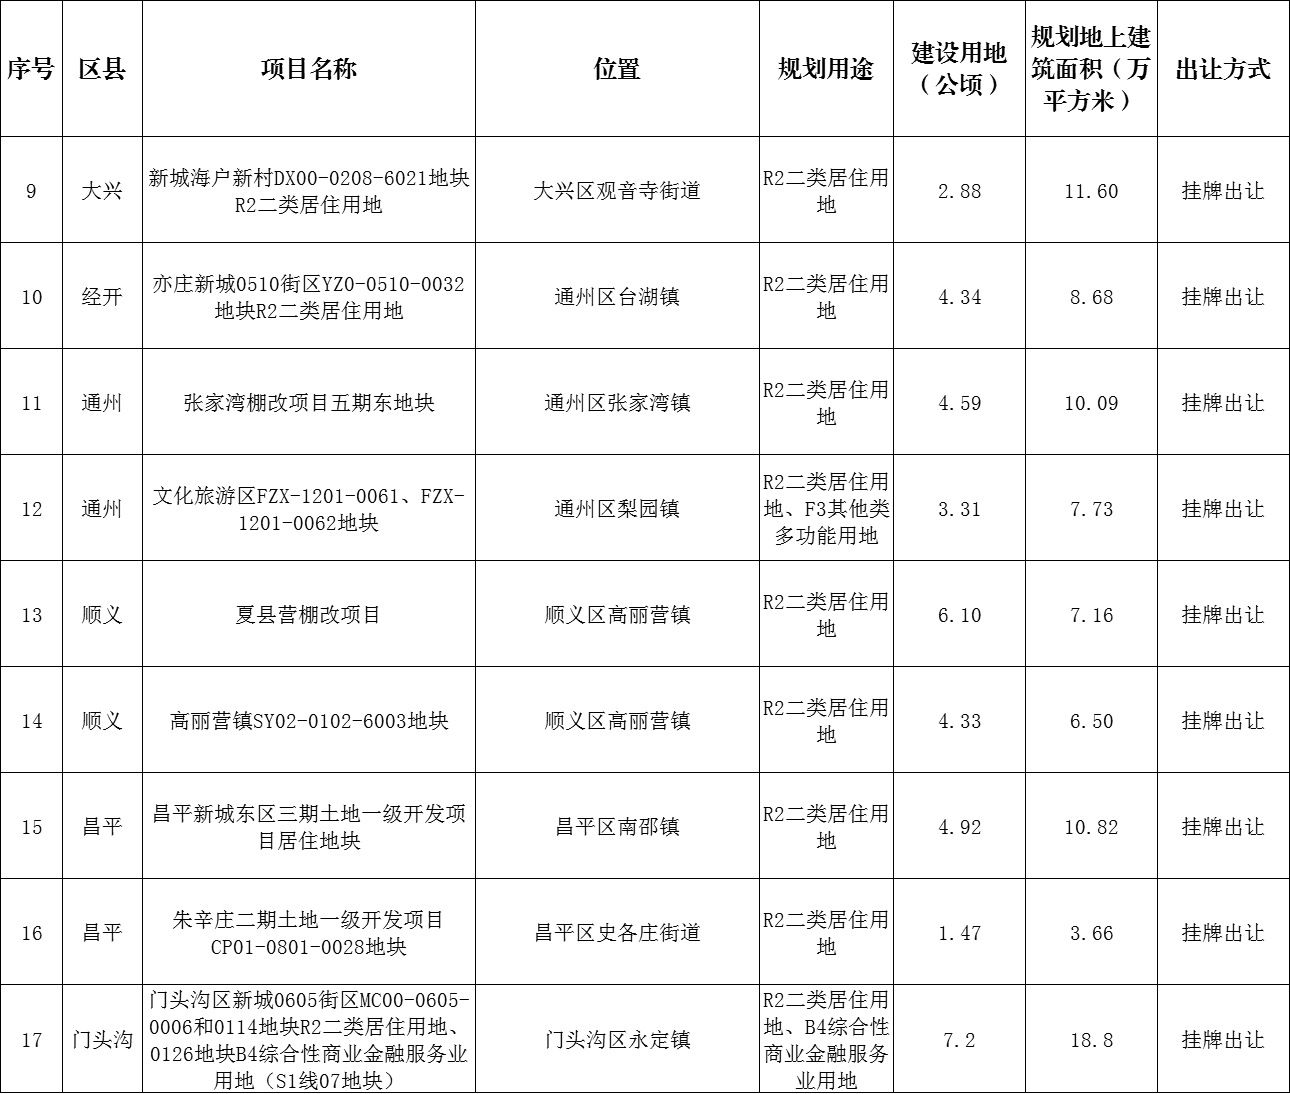 北京市规自委发布2023年部分拟供商品住宅用地项目清单（第一批）_中国网地产